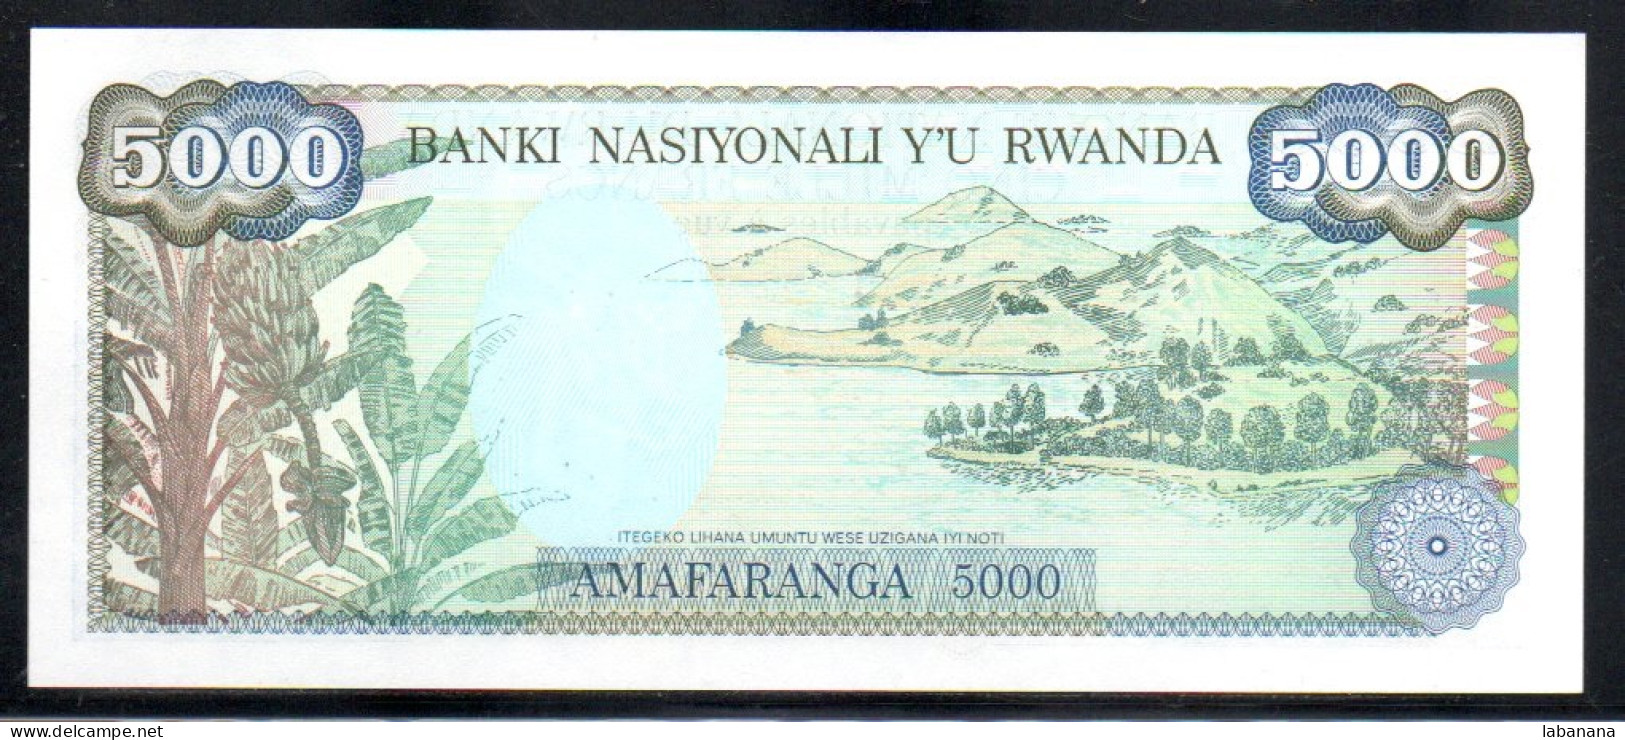 659-Rwanda 5000fr 1988 F246 Neuf/unc - Ruanda